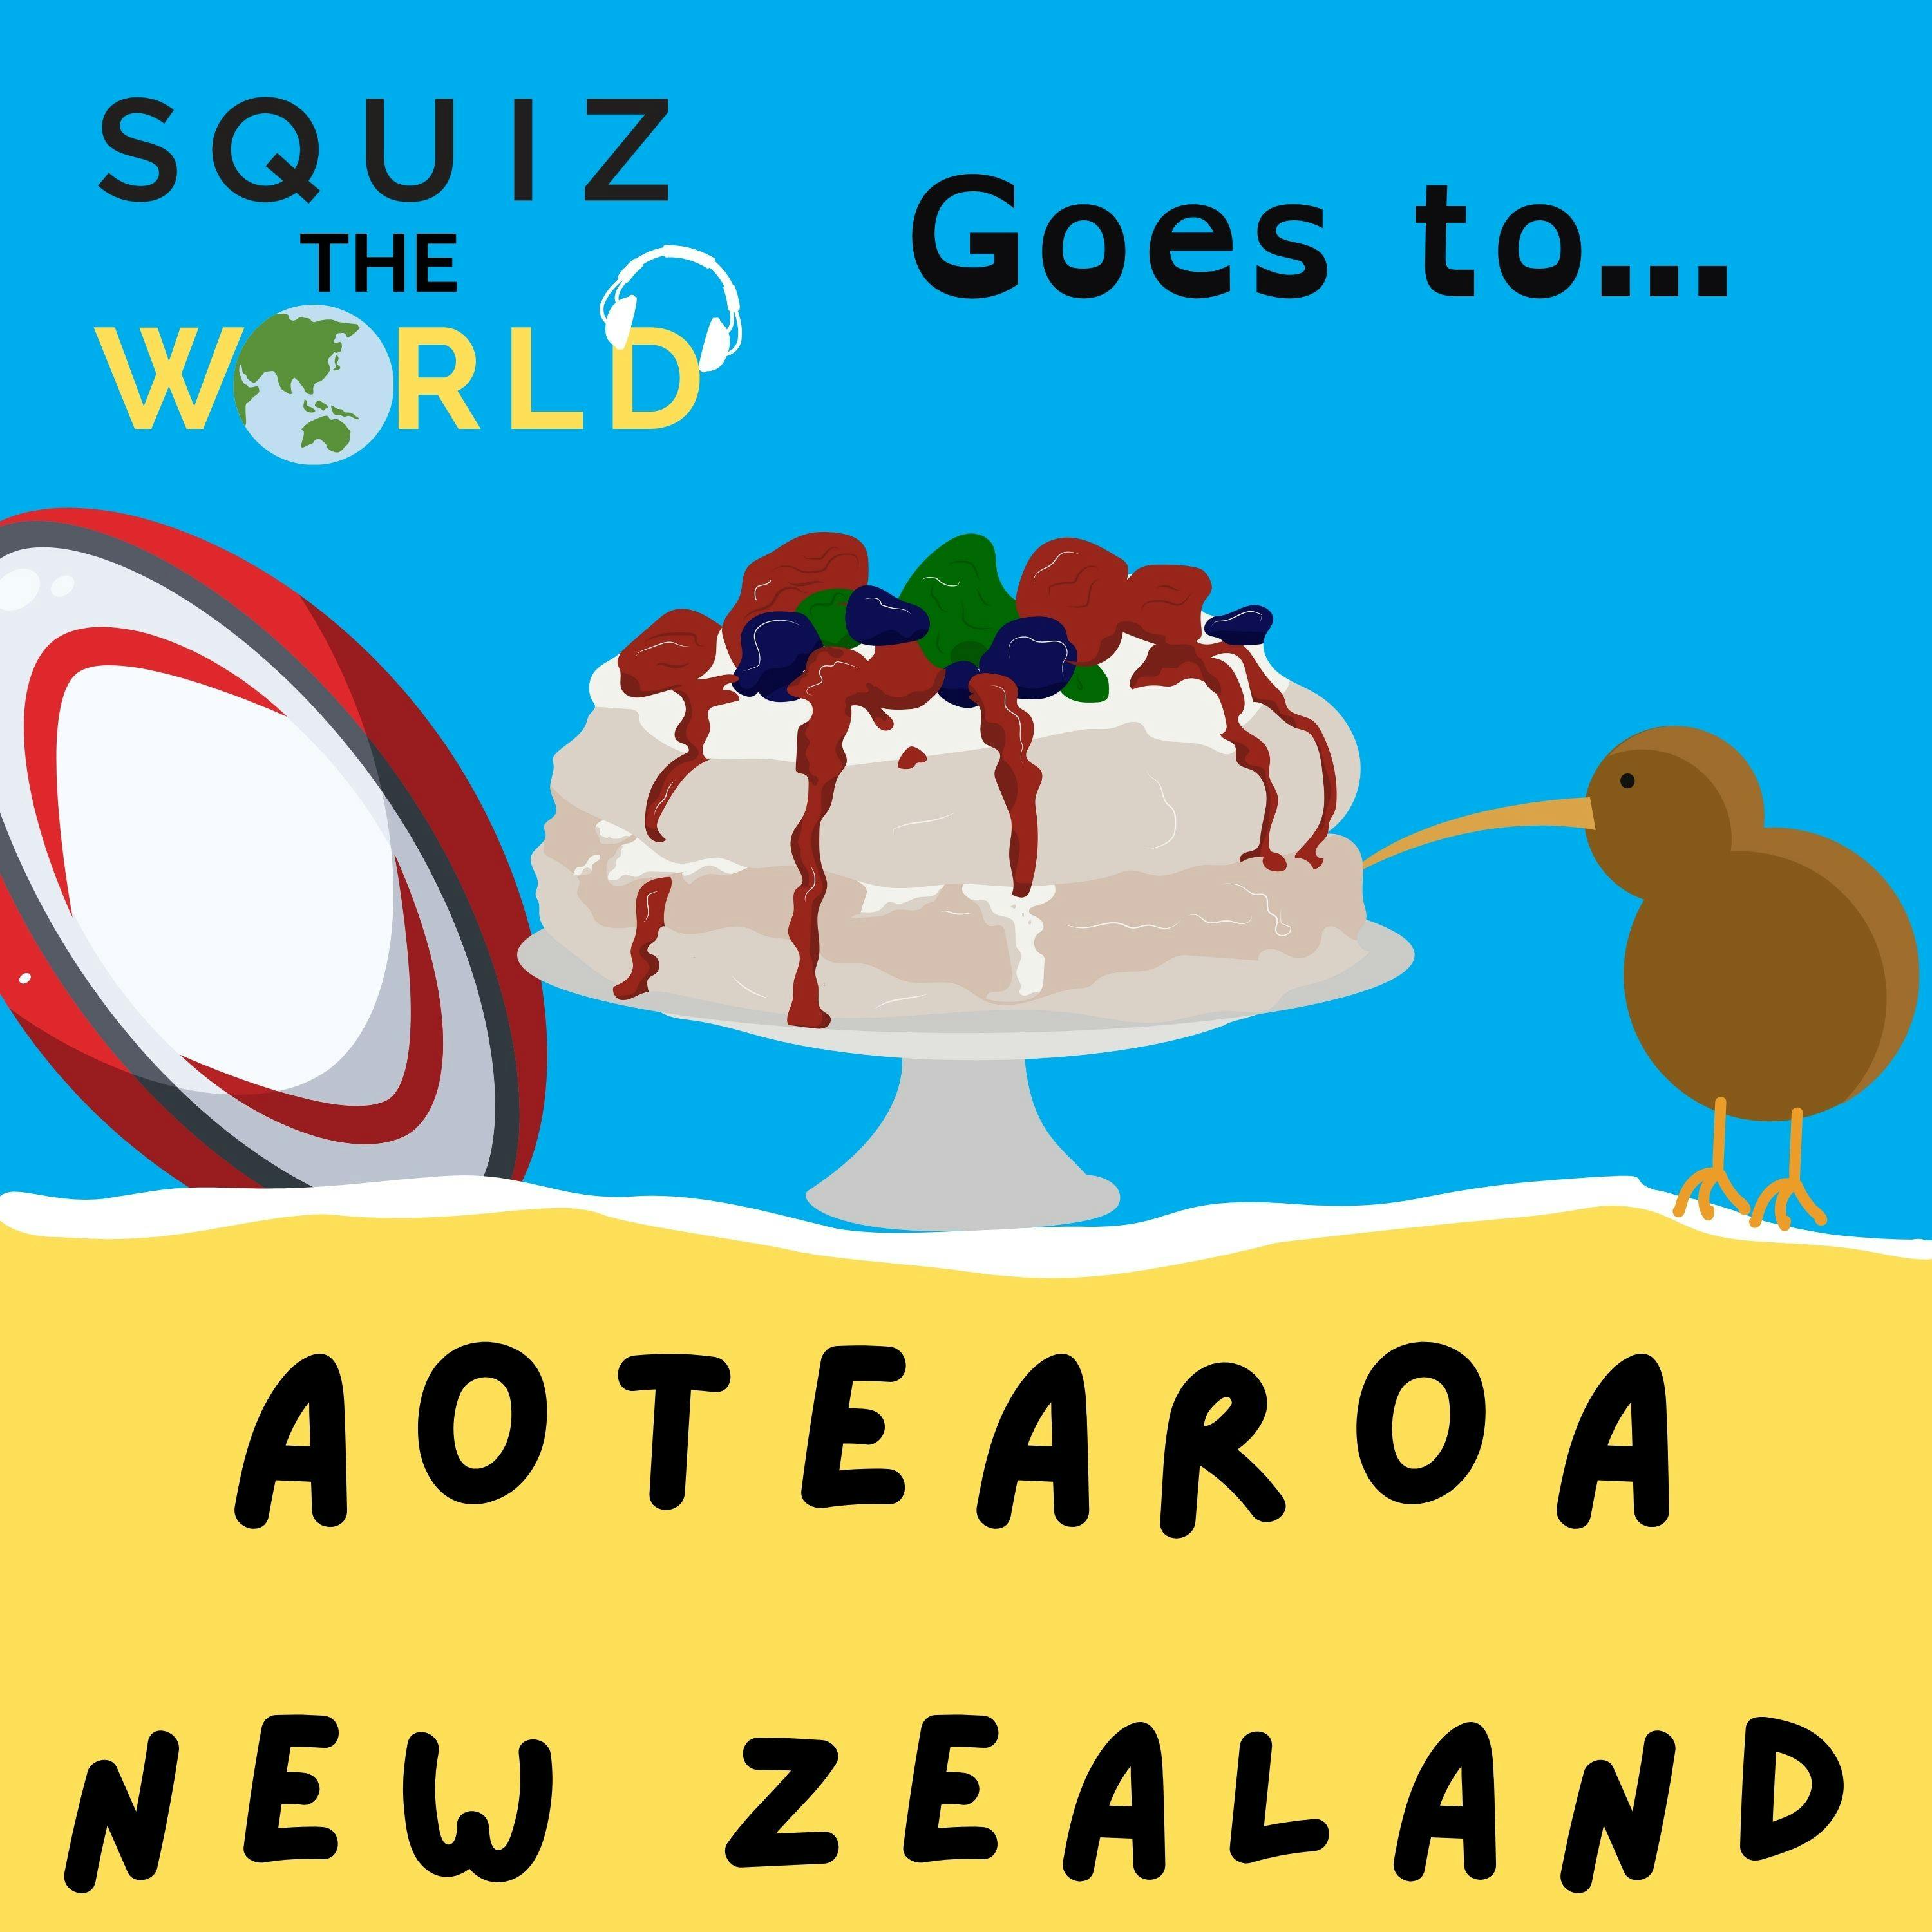 Squiz the World goes to... Aotearoa / New Zealand